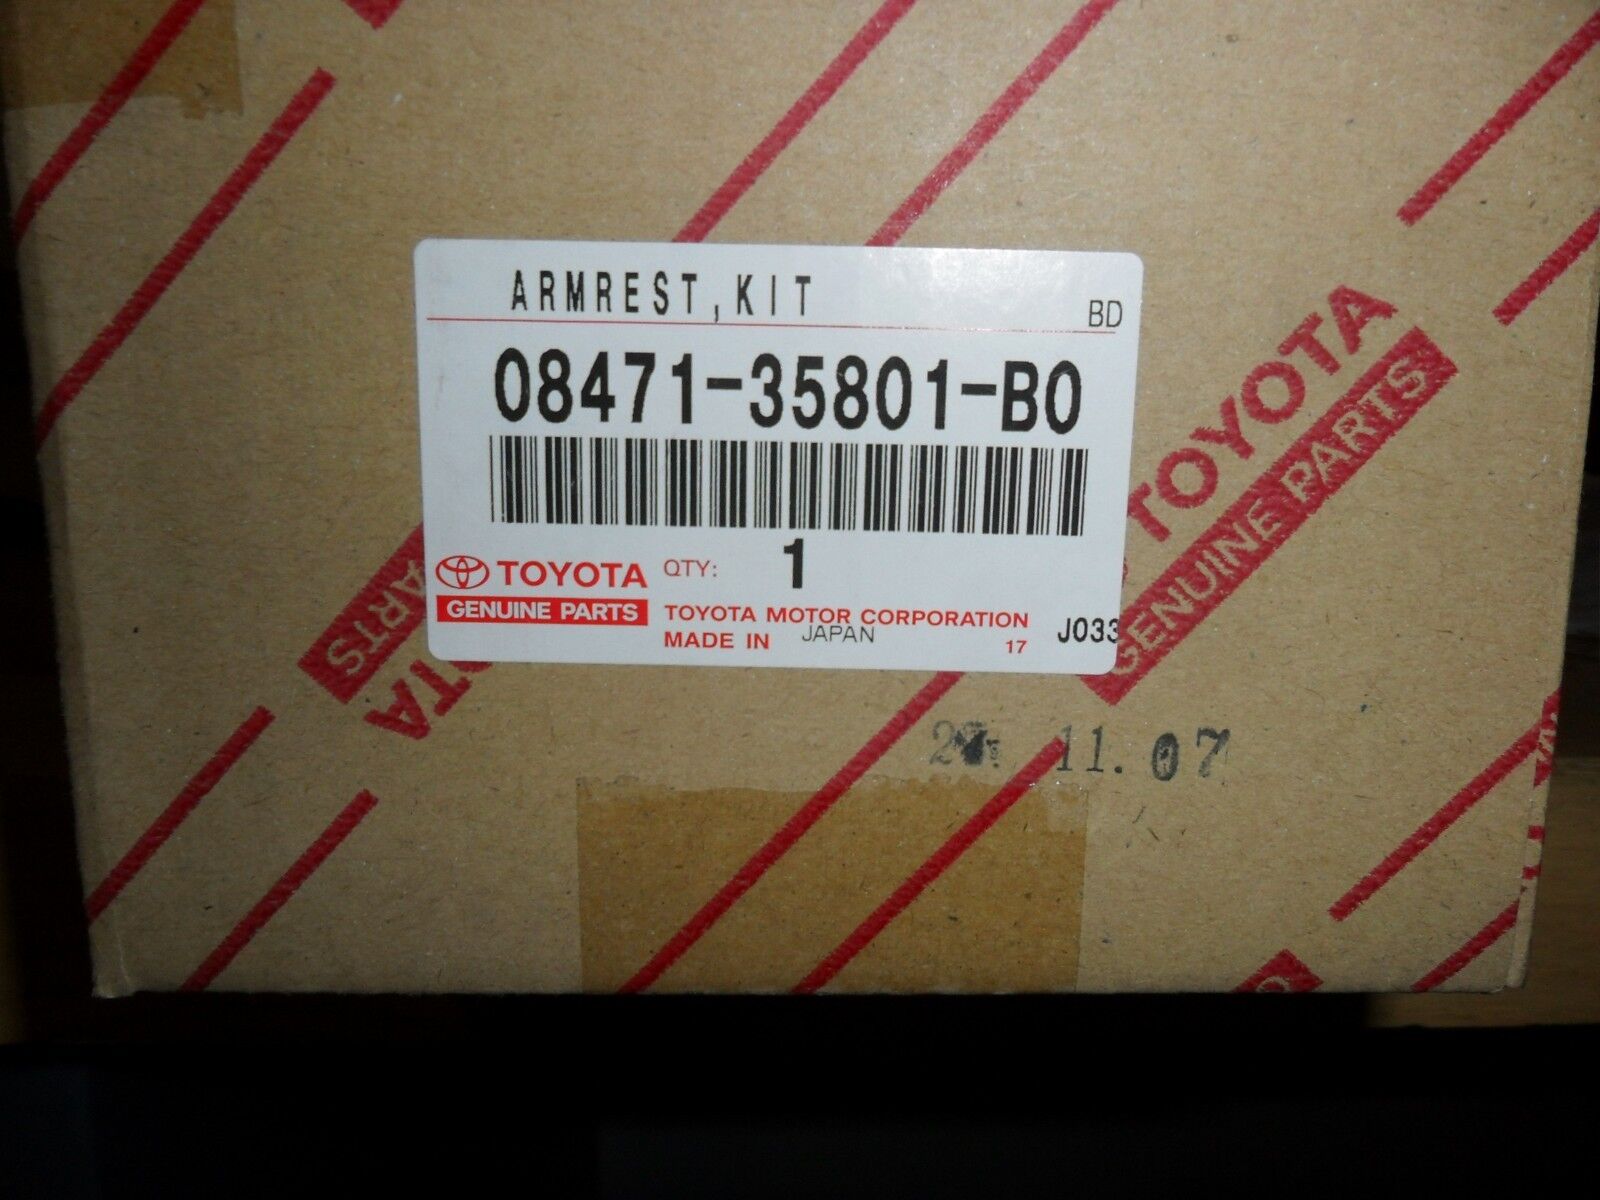 2008-2012 Toyota FJ Cruiser Passenger Side Armrest BRAND NEW OEM 08471-35801-B0